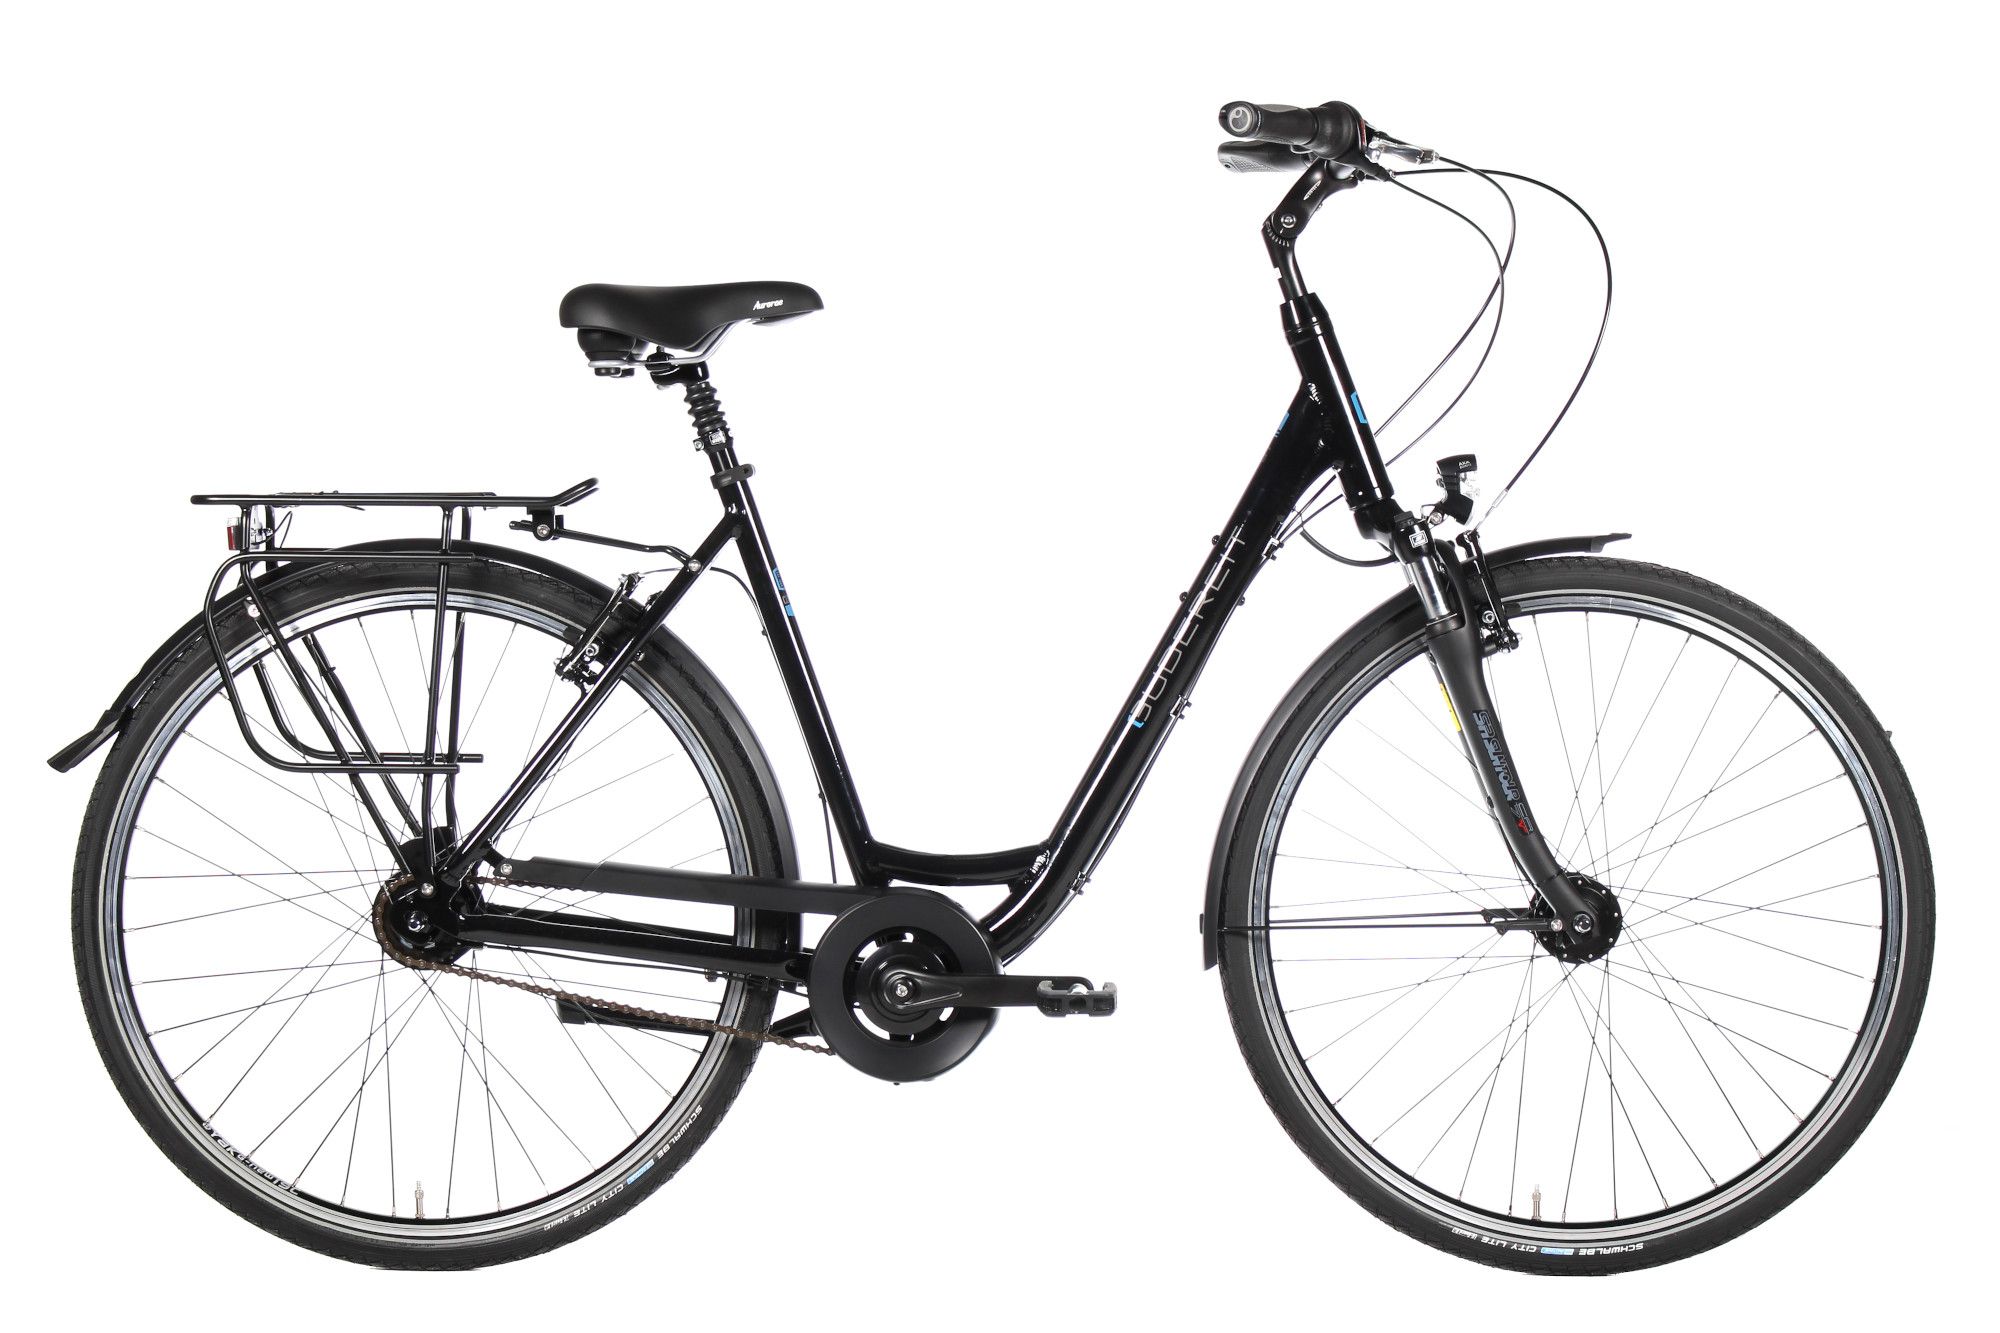 Gudereit Comfort 8.0 FL Einrohr schwarz - Fahrrad Online Shop